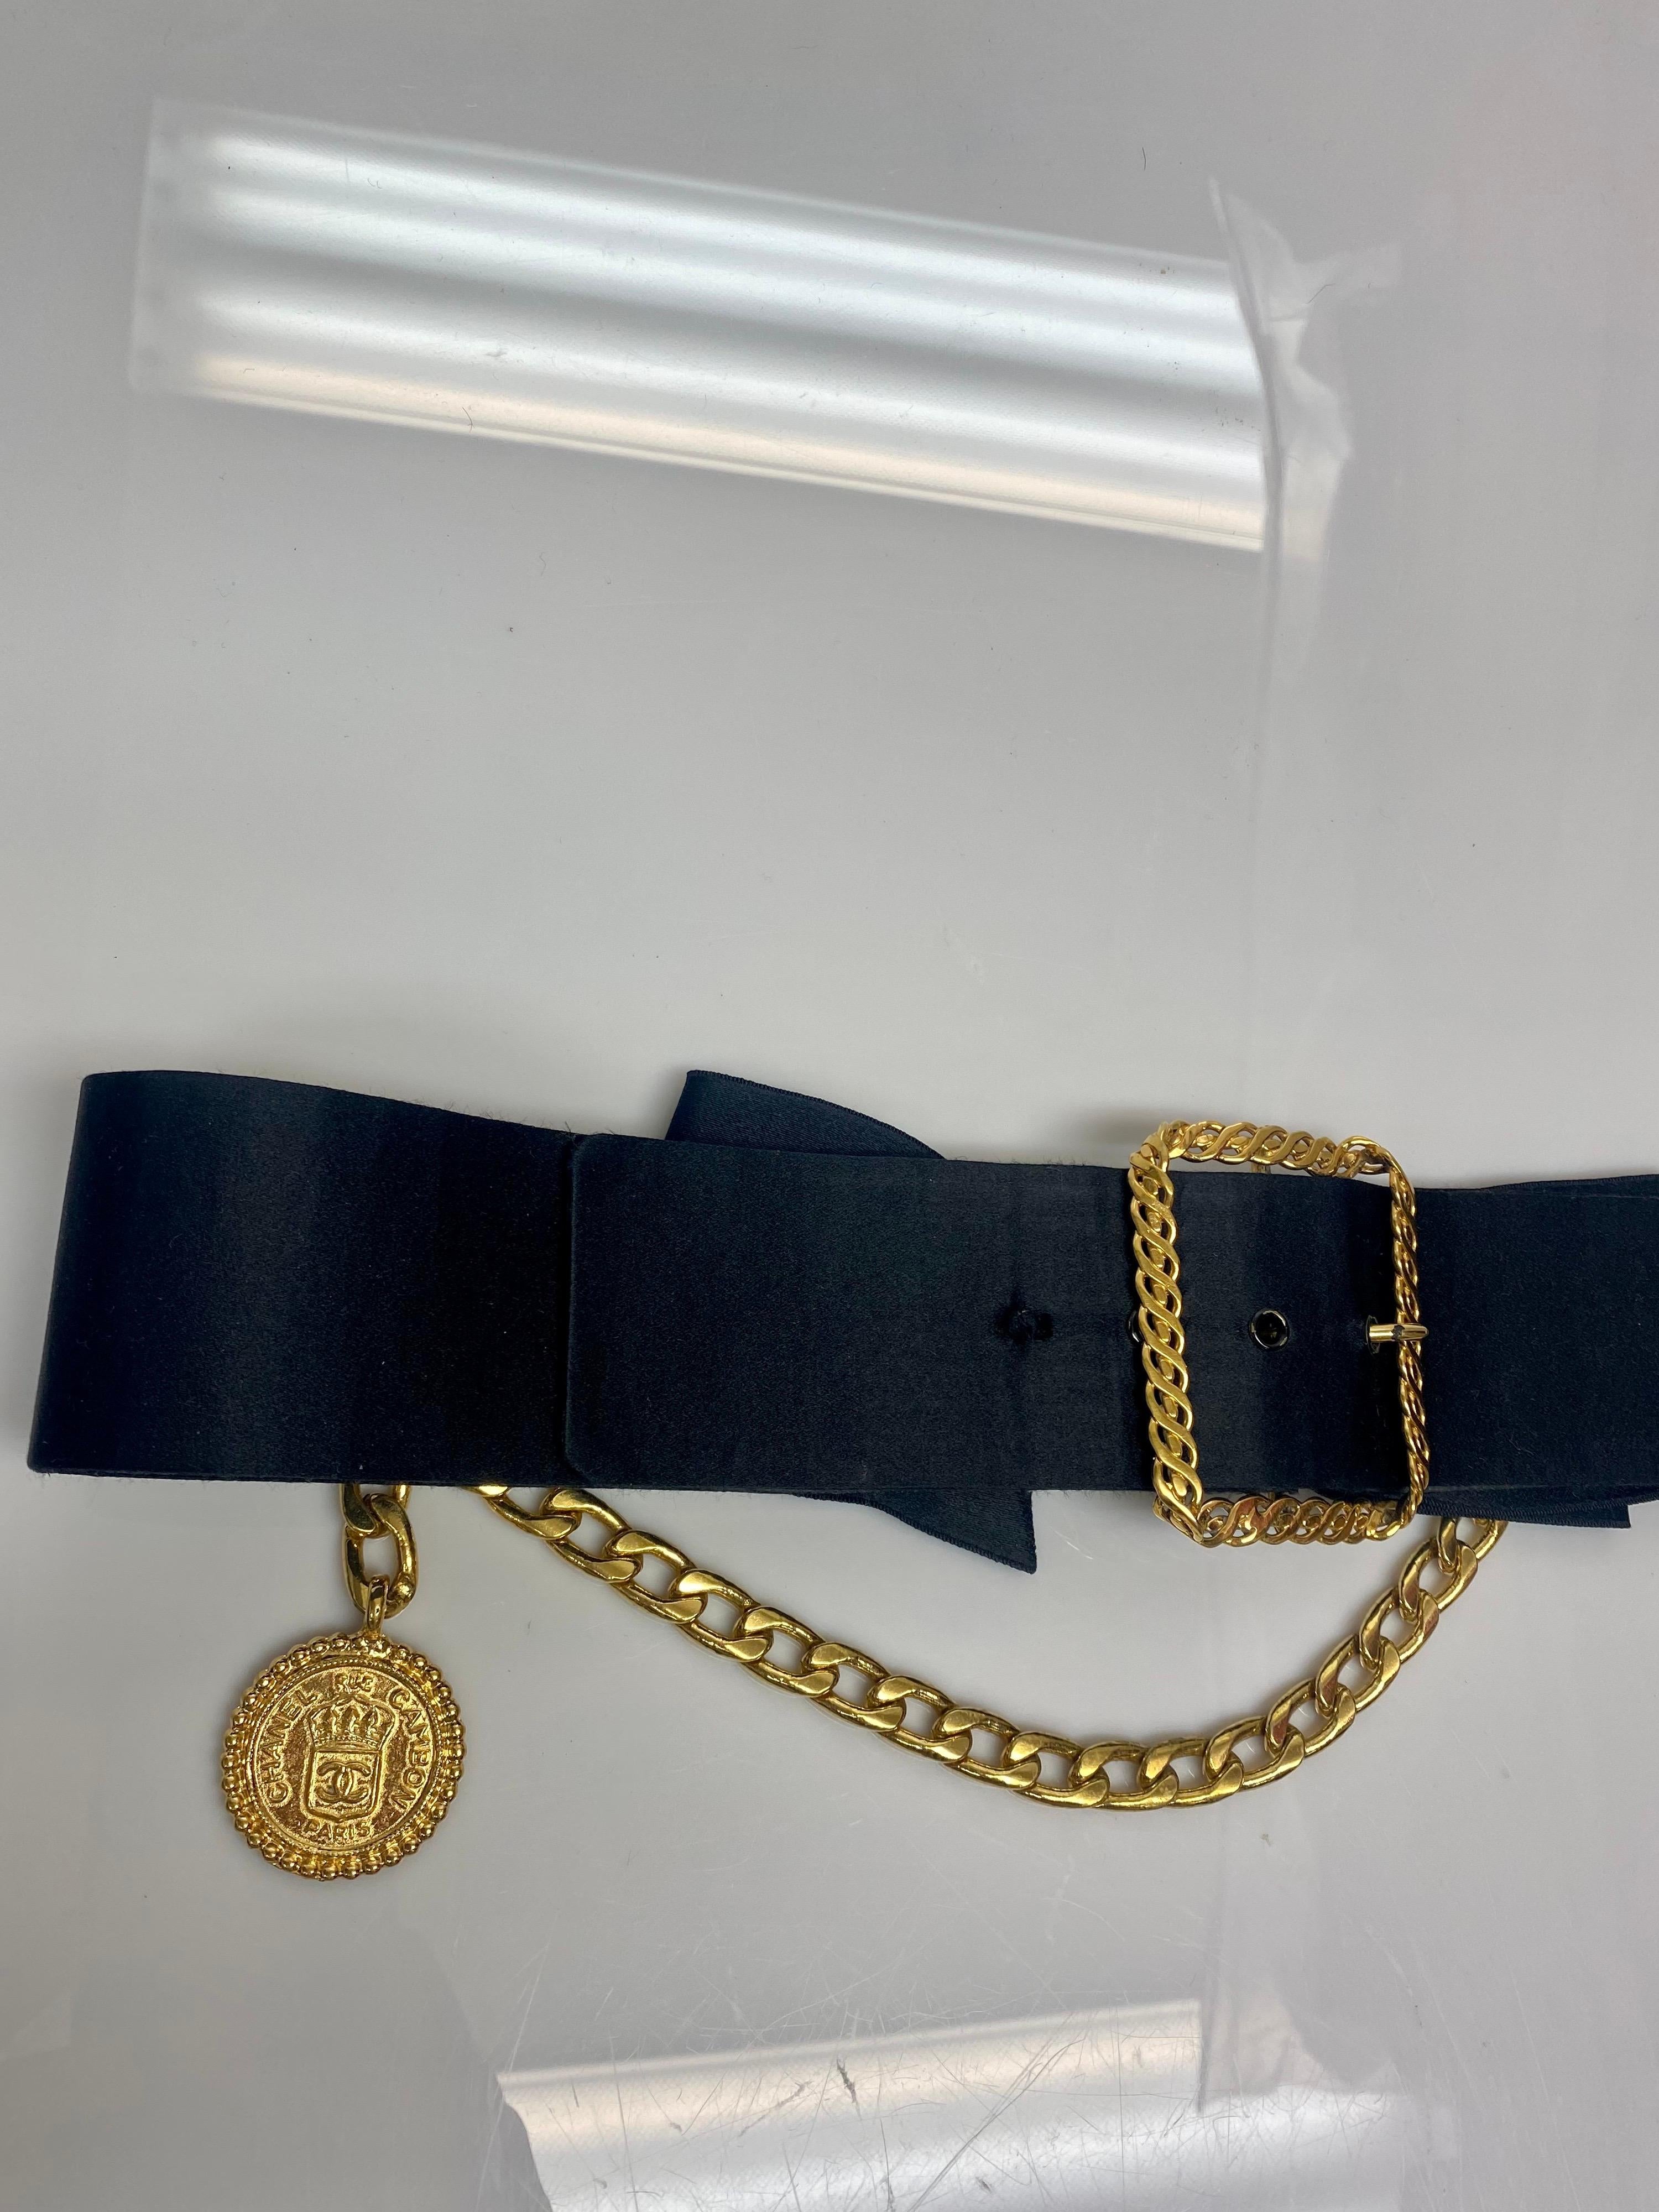 Chanel Vintage Schwarz Satin Schleife mit Gold Schnalle, Kette und Medalion Gürtel. Dieser Vintage-Gürtel von Chanel ist eine luxuriöse Ergänzung für jeden Kleiderschrank. Der Artikel hat eine schwarze Satinschleife und eine große goldene Schnalle